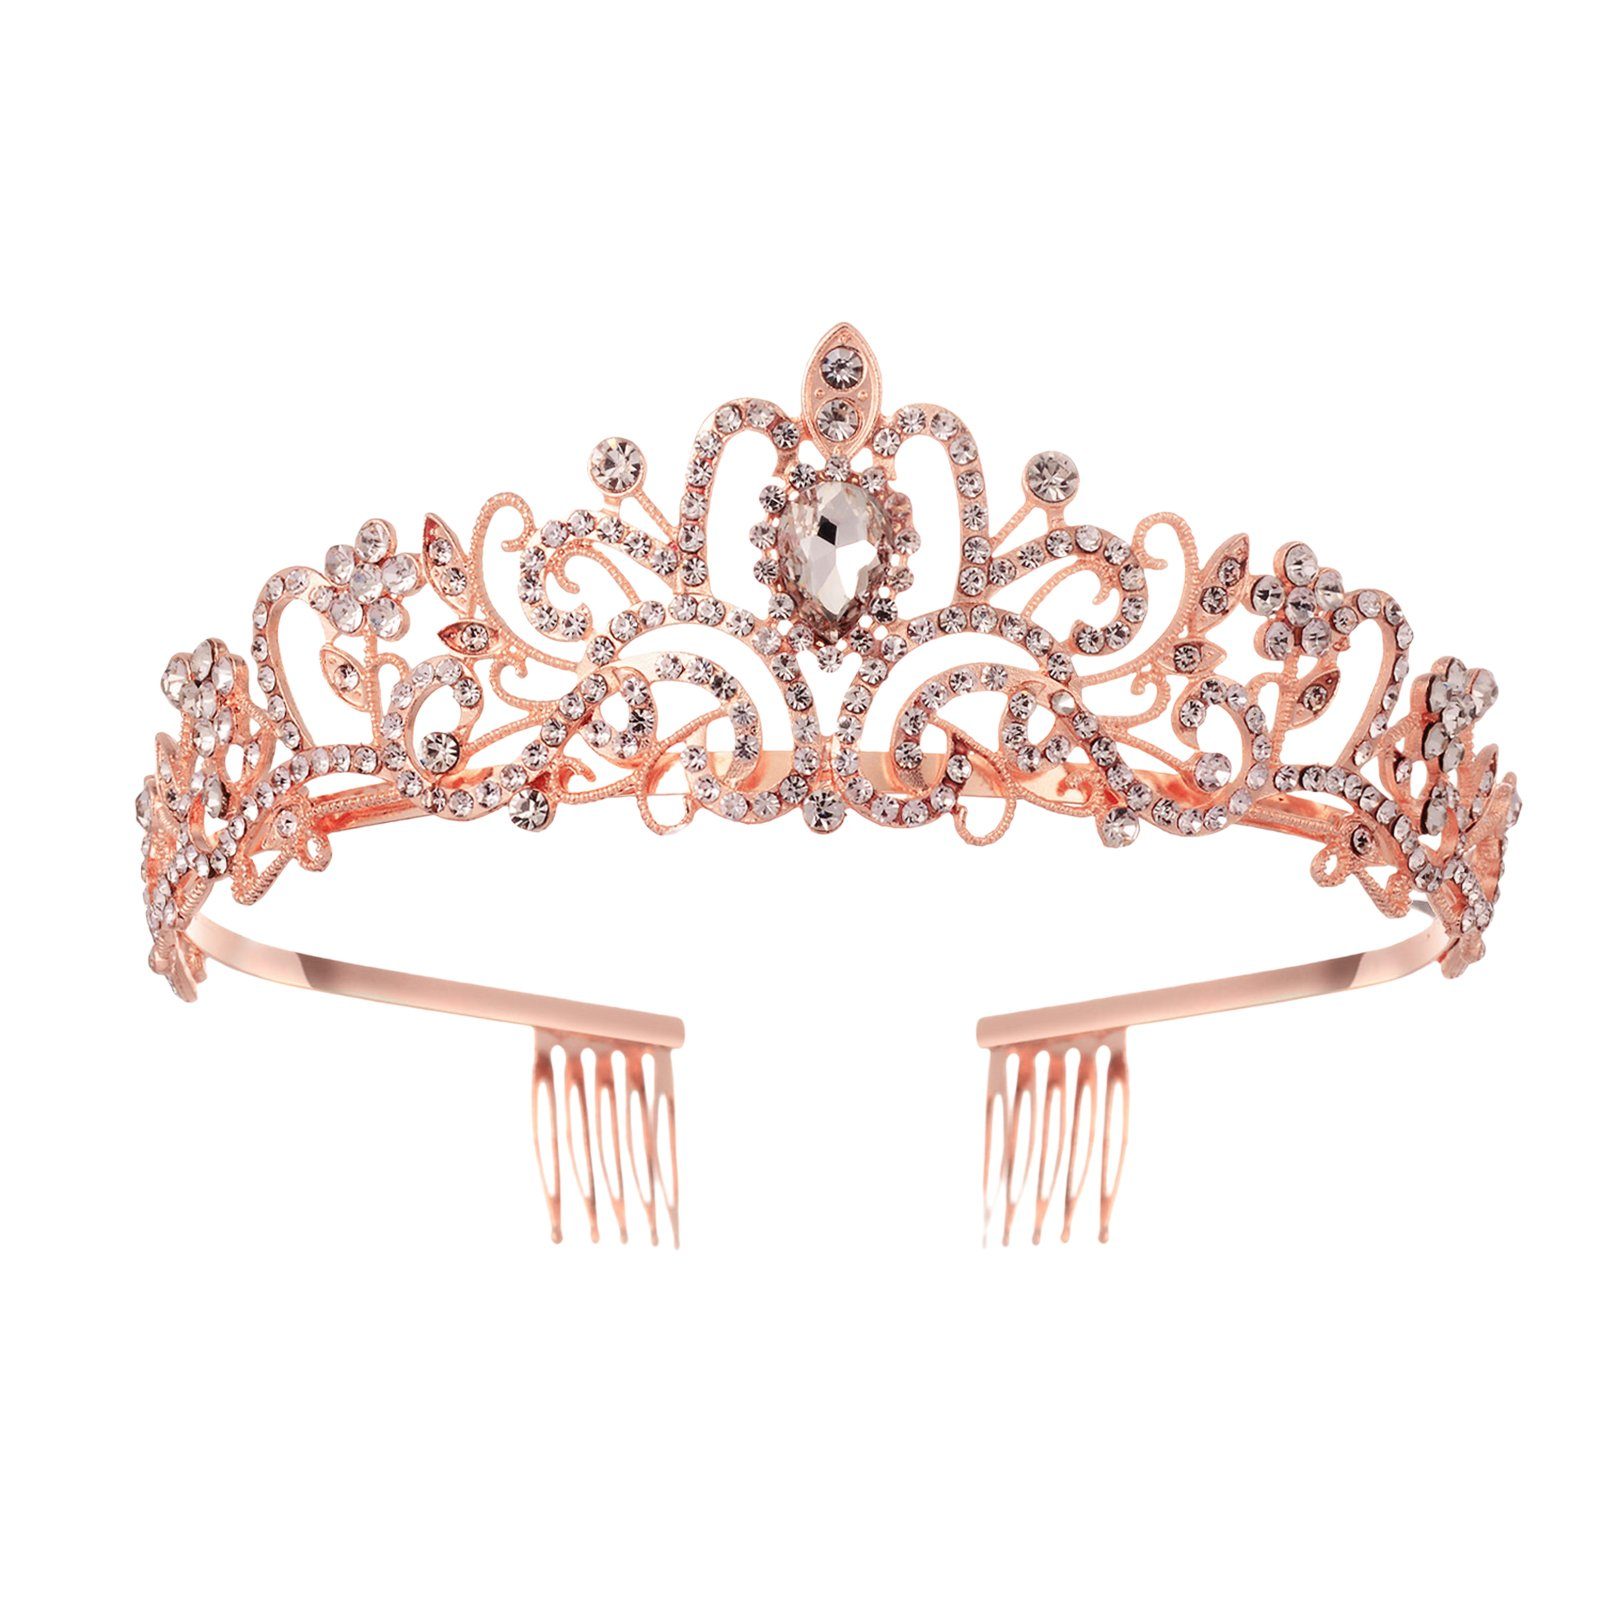 Blusmart Haarband Leichte, Luxuriöse Für Haarband gold Haarschmuck, Hochzeit, Strass-Kronen-Tiaras rose